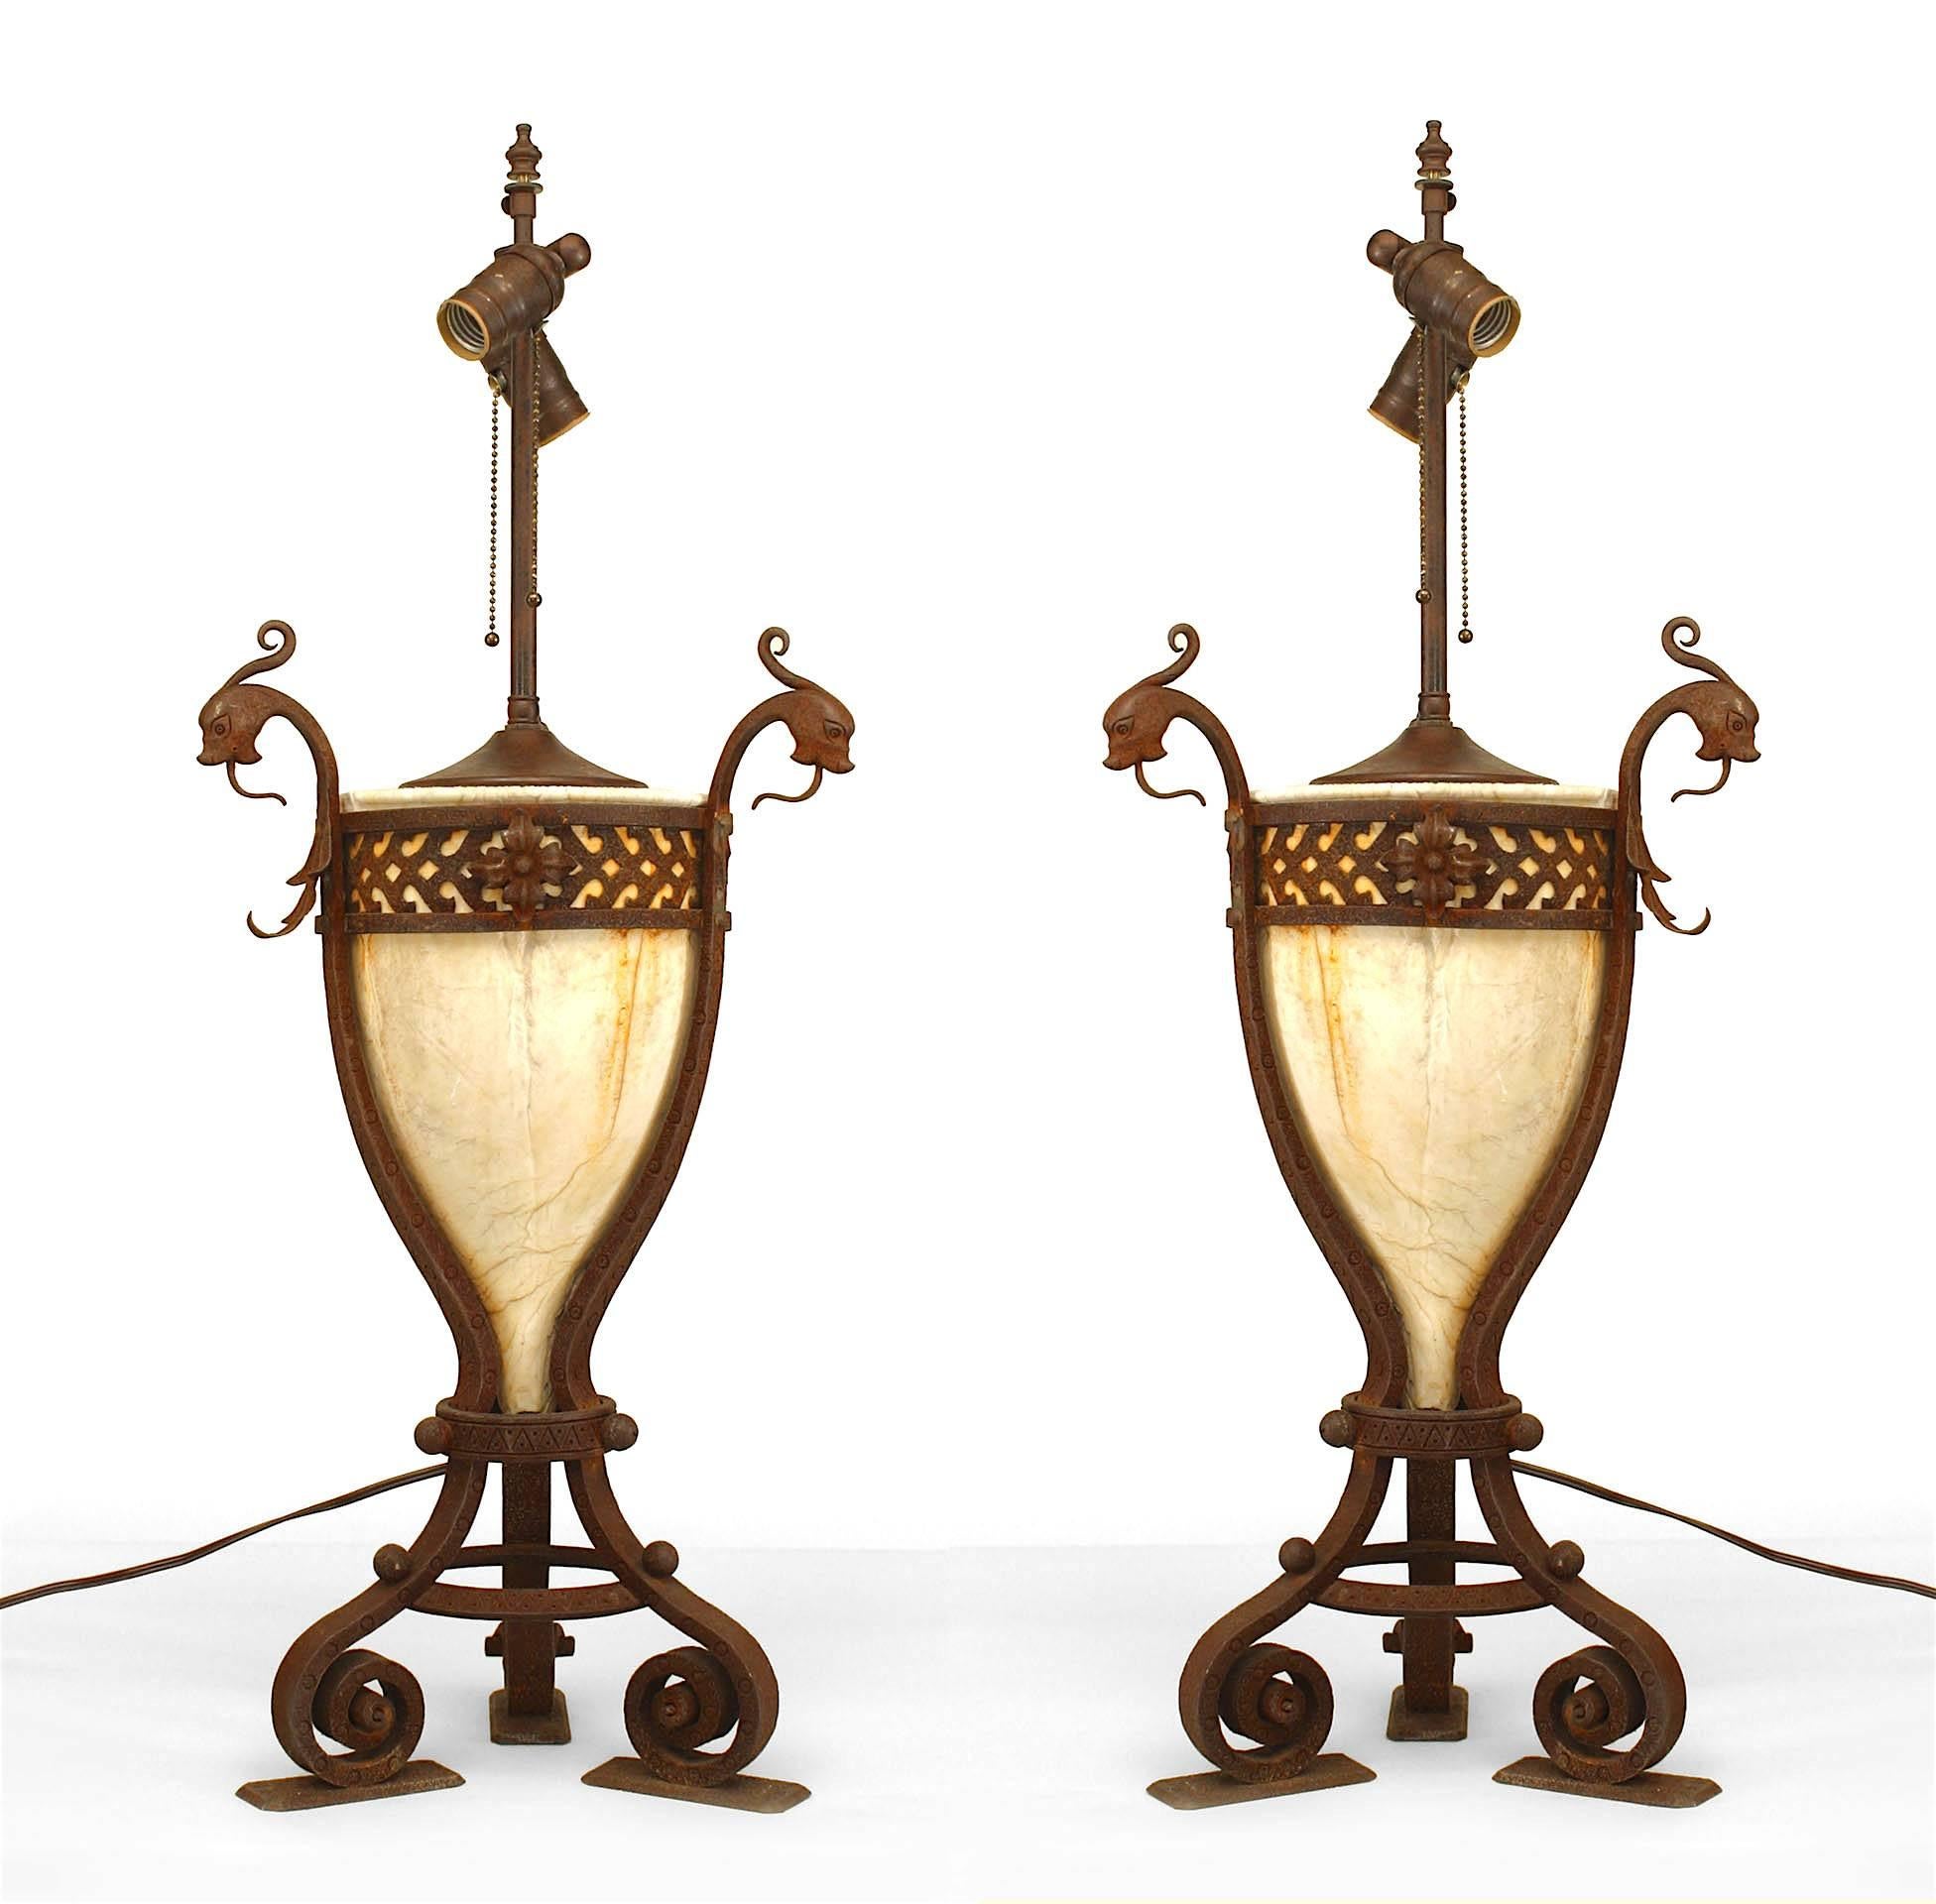 Paire de lampes de style Renaissance italienne (19/20e siècle) en forme de vase en albâtre dans un cadre en fer forgé à 3 sections avec des têtes à fleurons mythologiques et des pieds à volutes (PRIX PAR PAIRE).
